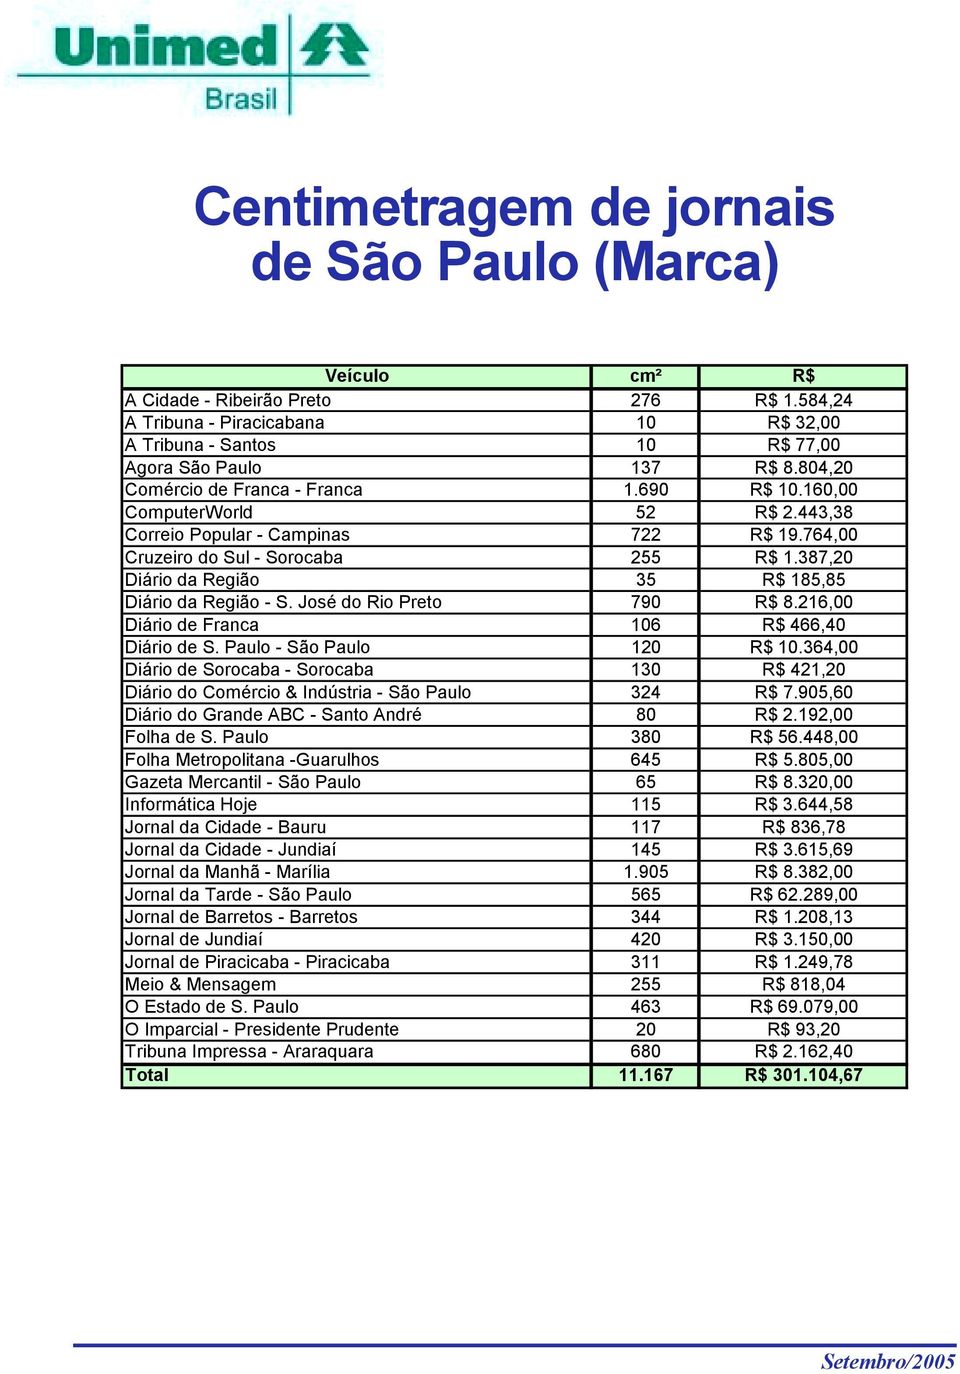 387,20 Diário da Região 35 R$ 185,85 Diário da Região - S. José do Rio Preto 790 R$ 8.216,00 Diário de Franca 106 R$ 466,40 Diário de S. Paulo - São Paulo 120 R$ 10.